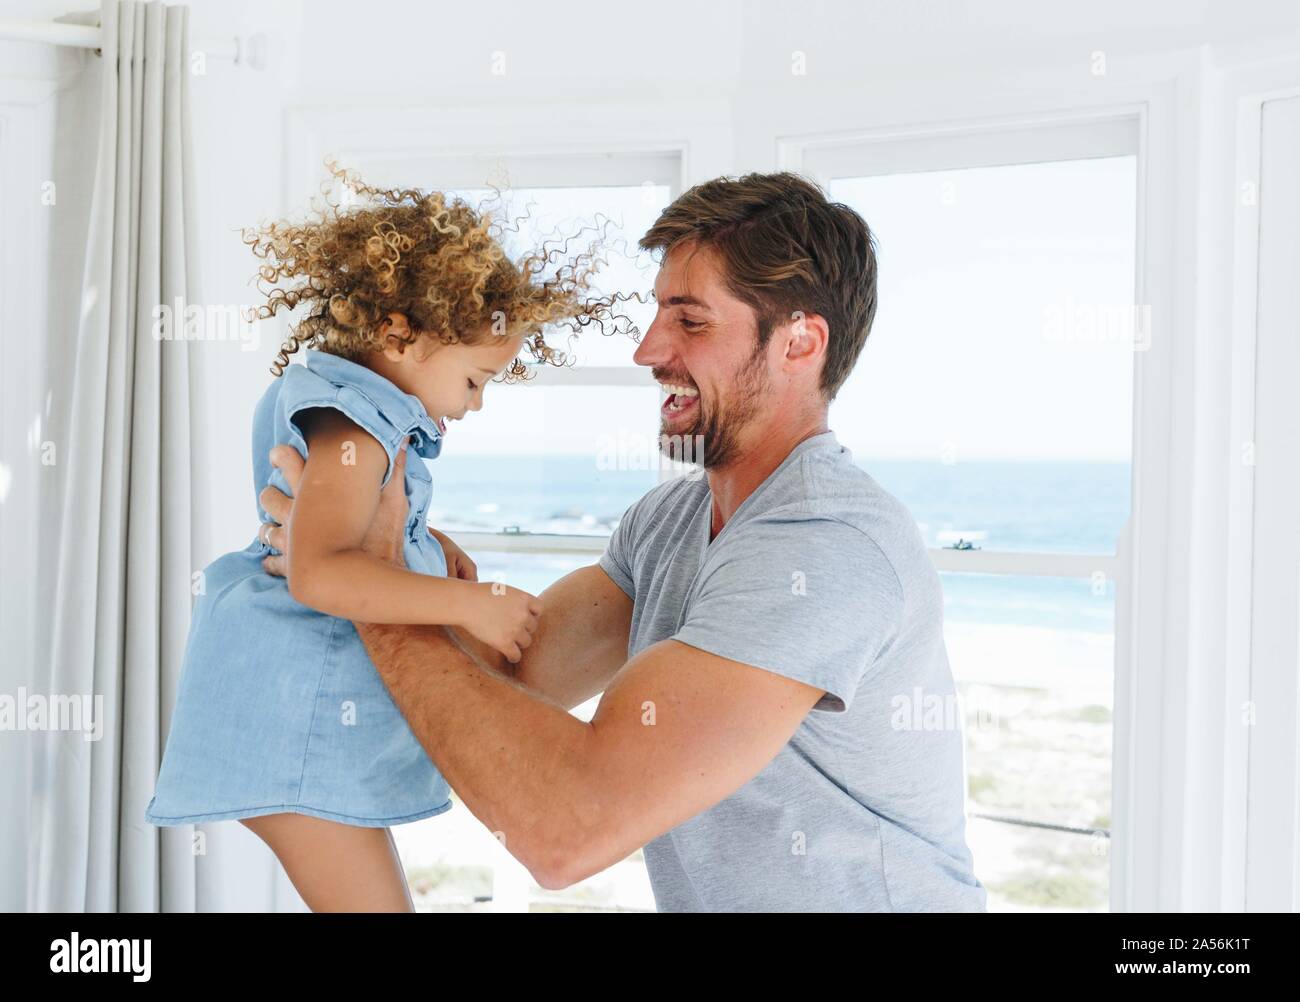 Padre tocando y moviendo hija en casa de playa Foto de stock